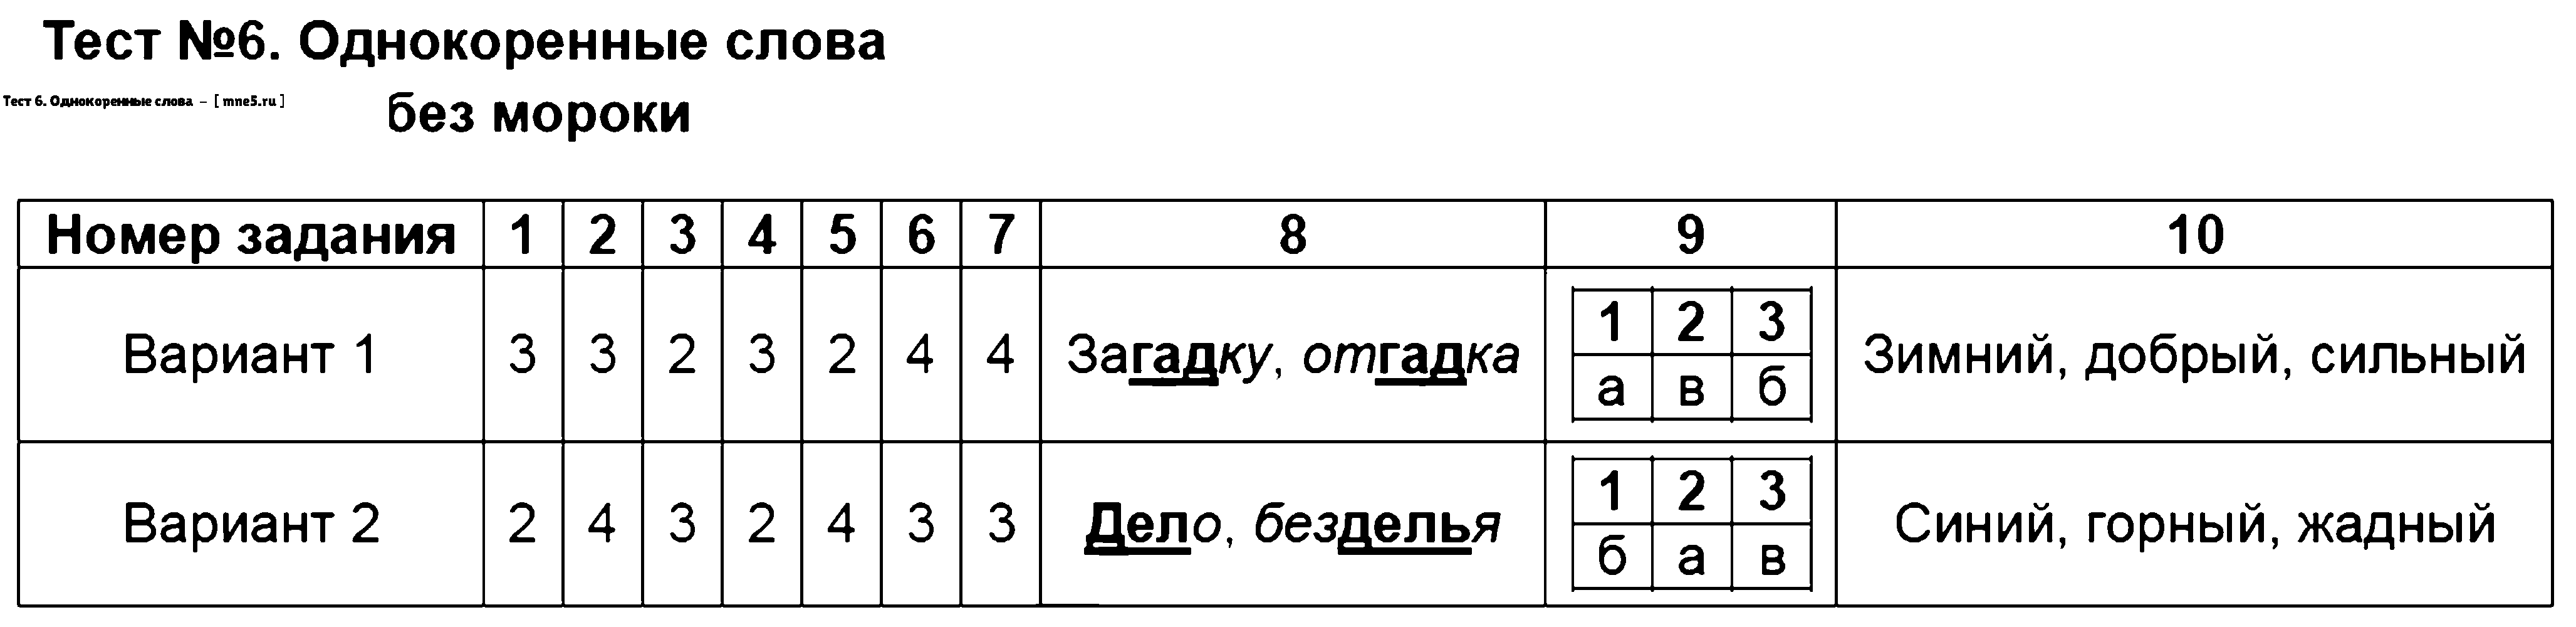 ГДЗ Русский язык 3 класс - Тест 6. Однокоренные слова